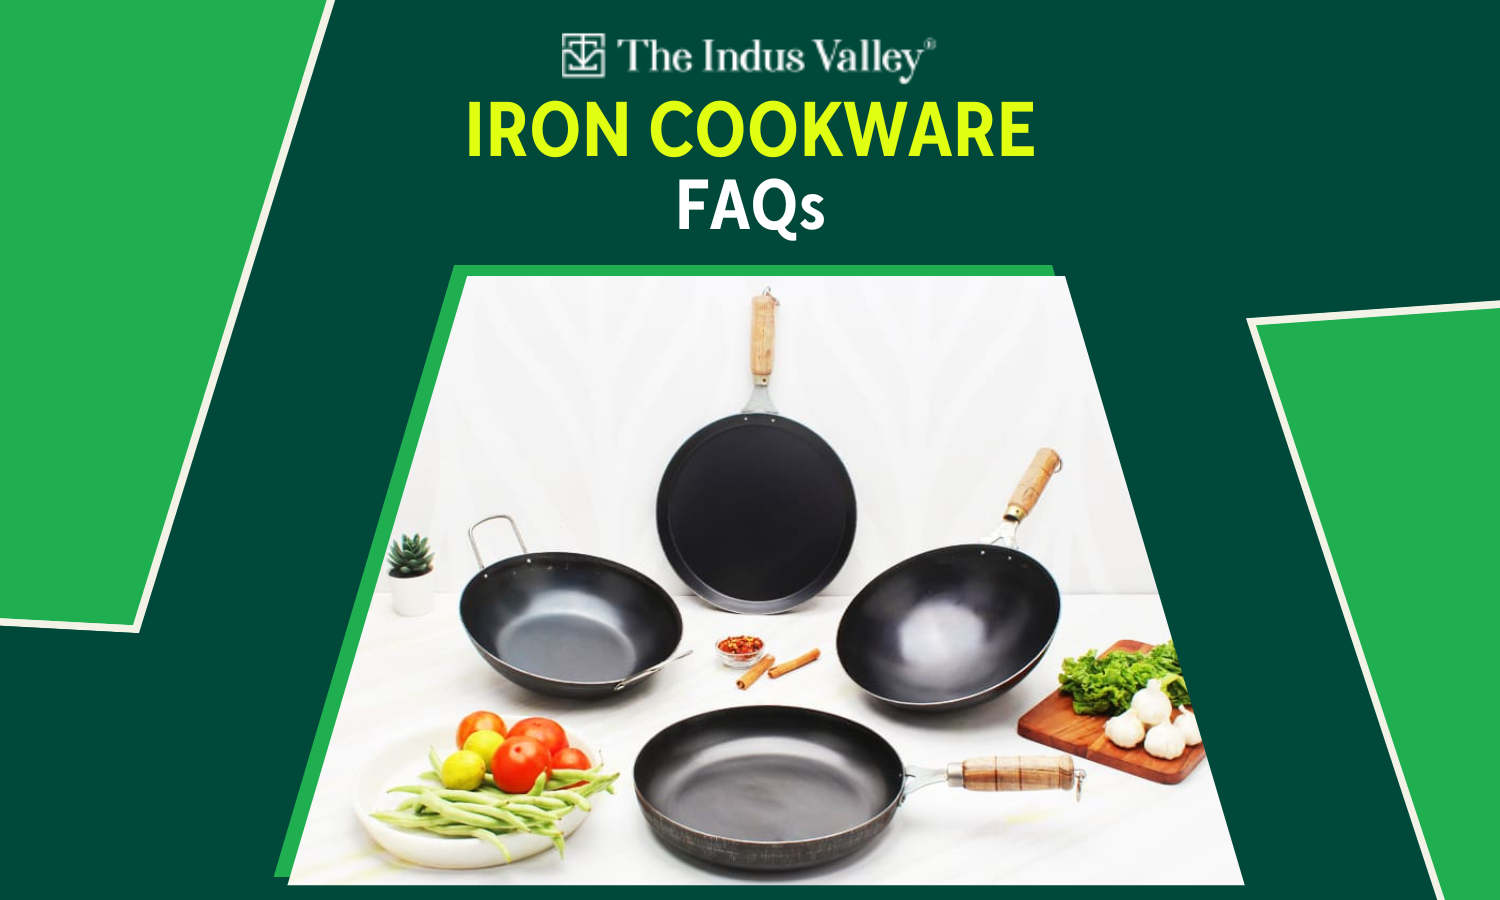 Iron cookware FAQs